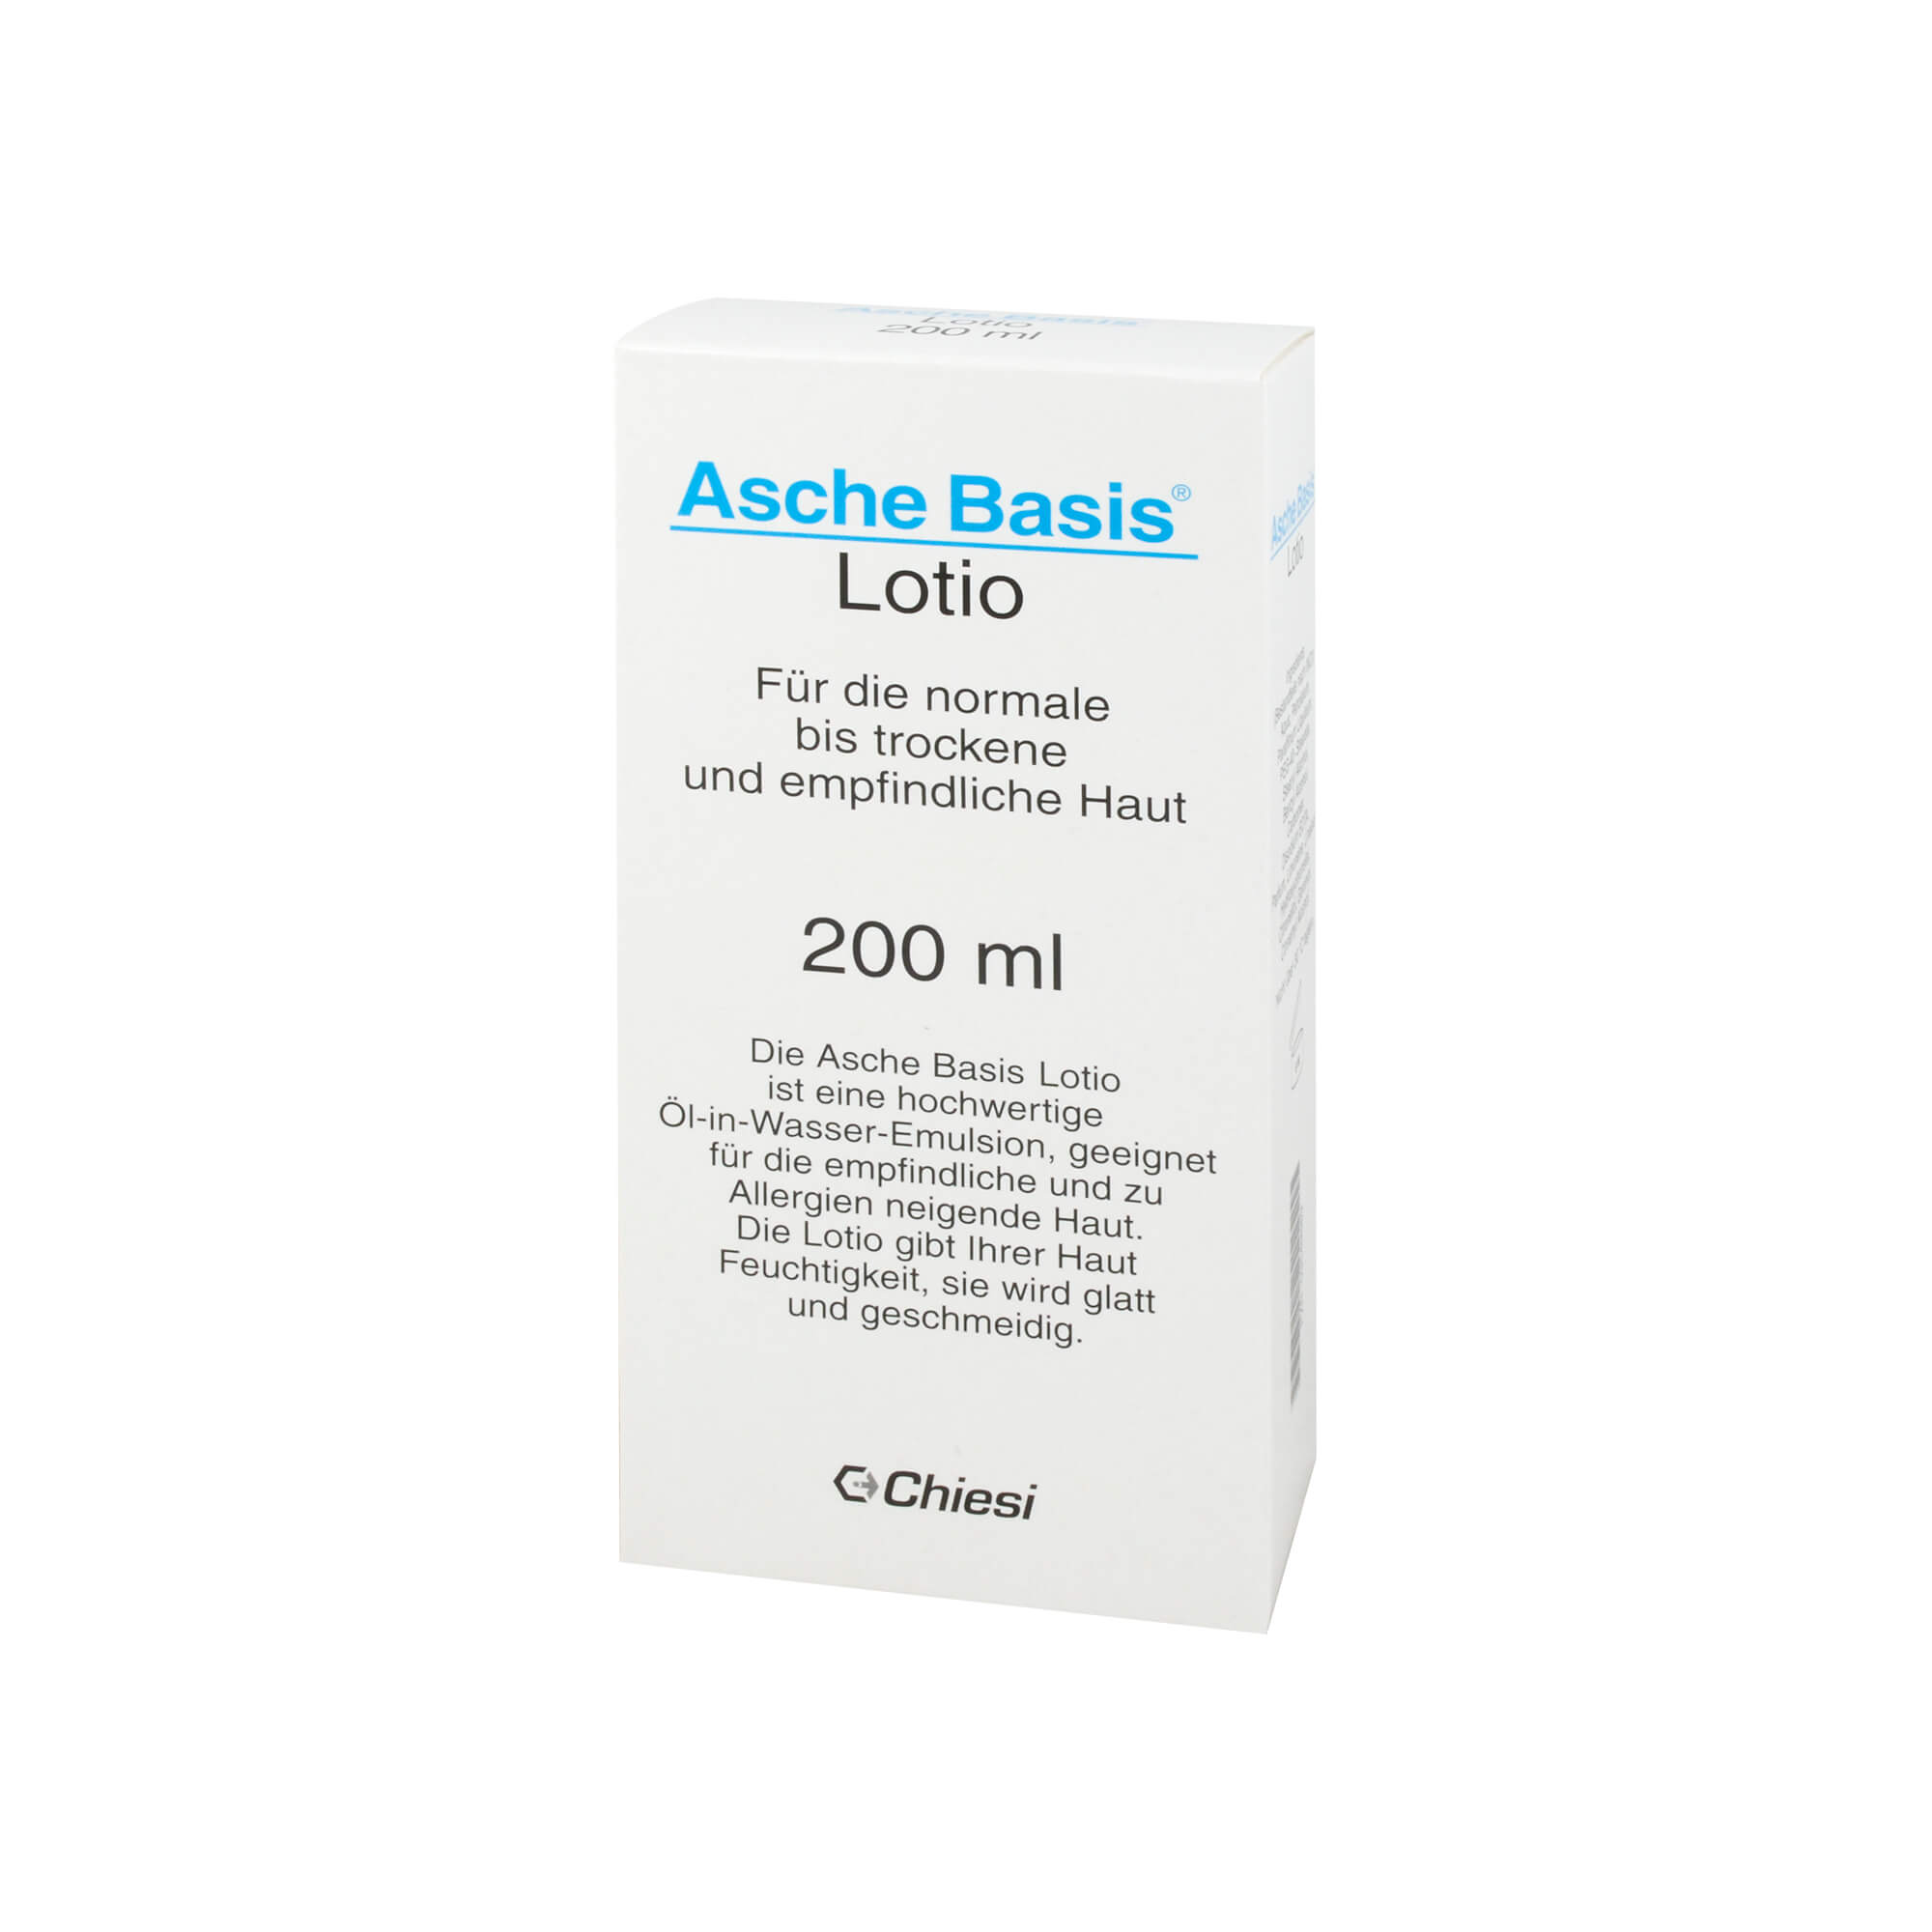 Asche Basis Lotio für die normale bis trockene und empfindliche Haut, für die Körperpflege nach Bad und Dusche.